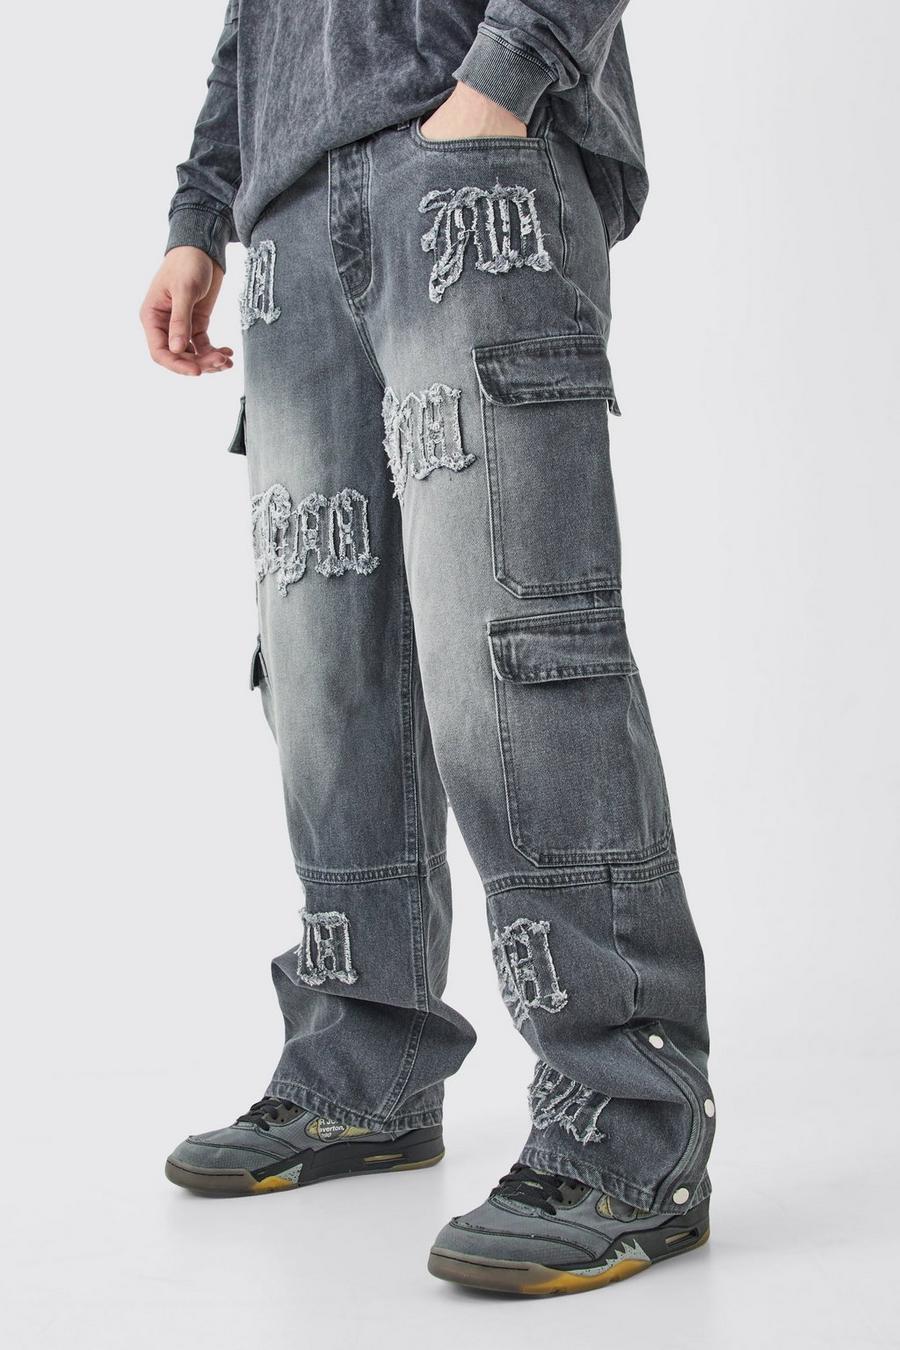 Tall lockere Cargo-Jeans mit Bm-Applikation und Taschen, Grey